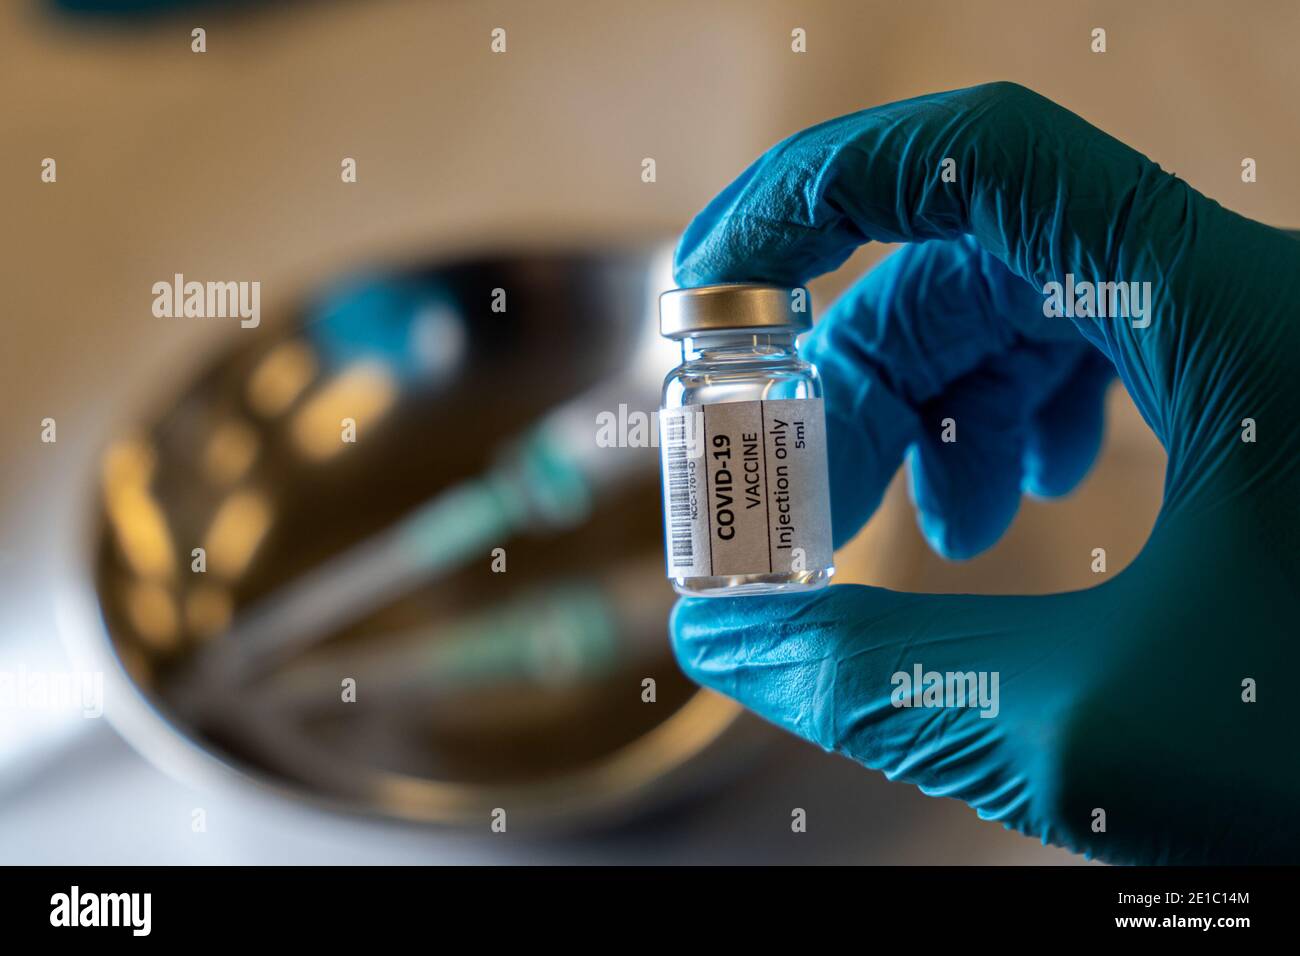 NIJMEGEN, PAÍSES BAJOS - 2 DE ENERO: Vacuna de la corona / ilustración de la vacuna Covid-19. Vial que se sujeta con una mano en guantes azules. Jeringa en una bandeja de metal i Foto de stock